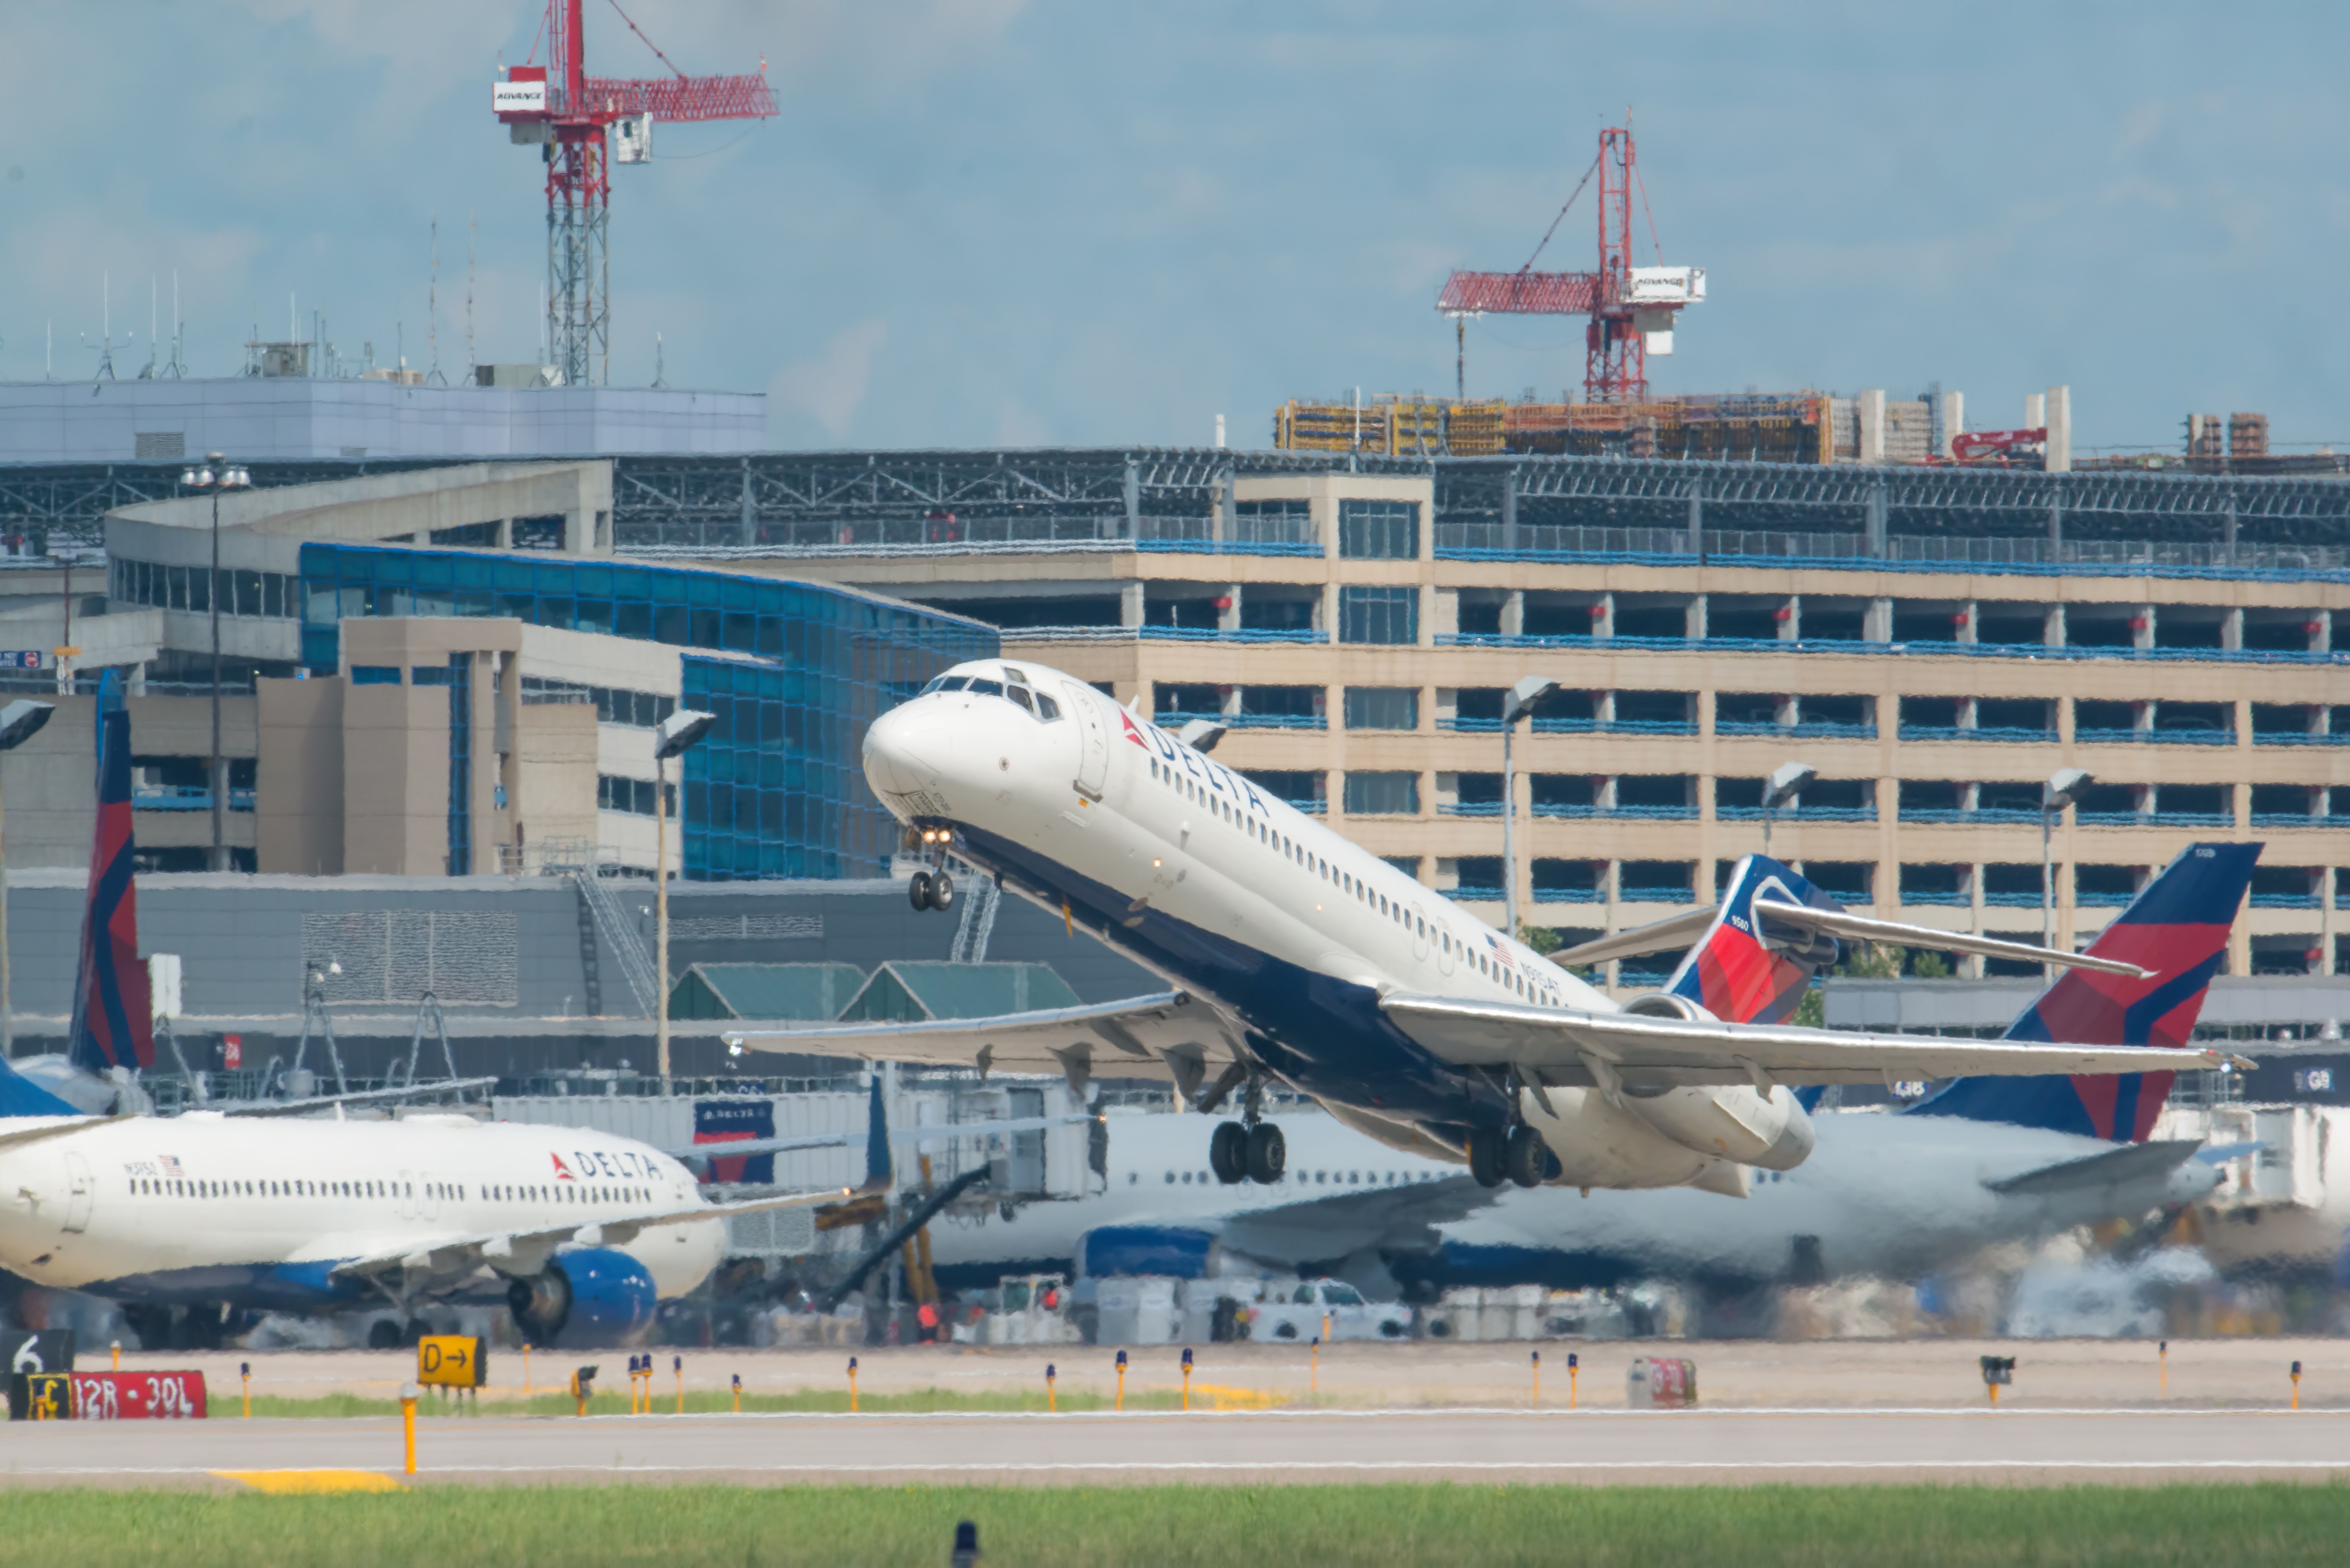 Delta aircraft taking off at MSP